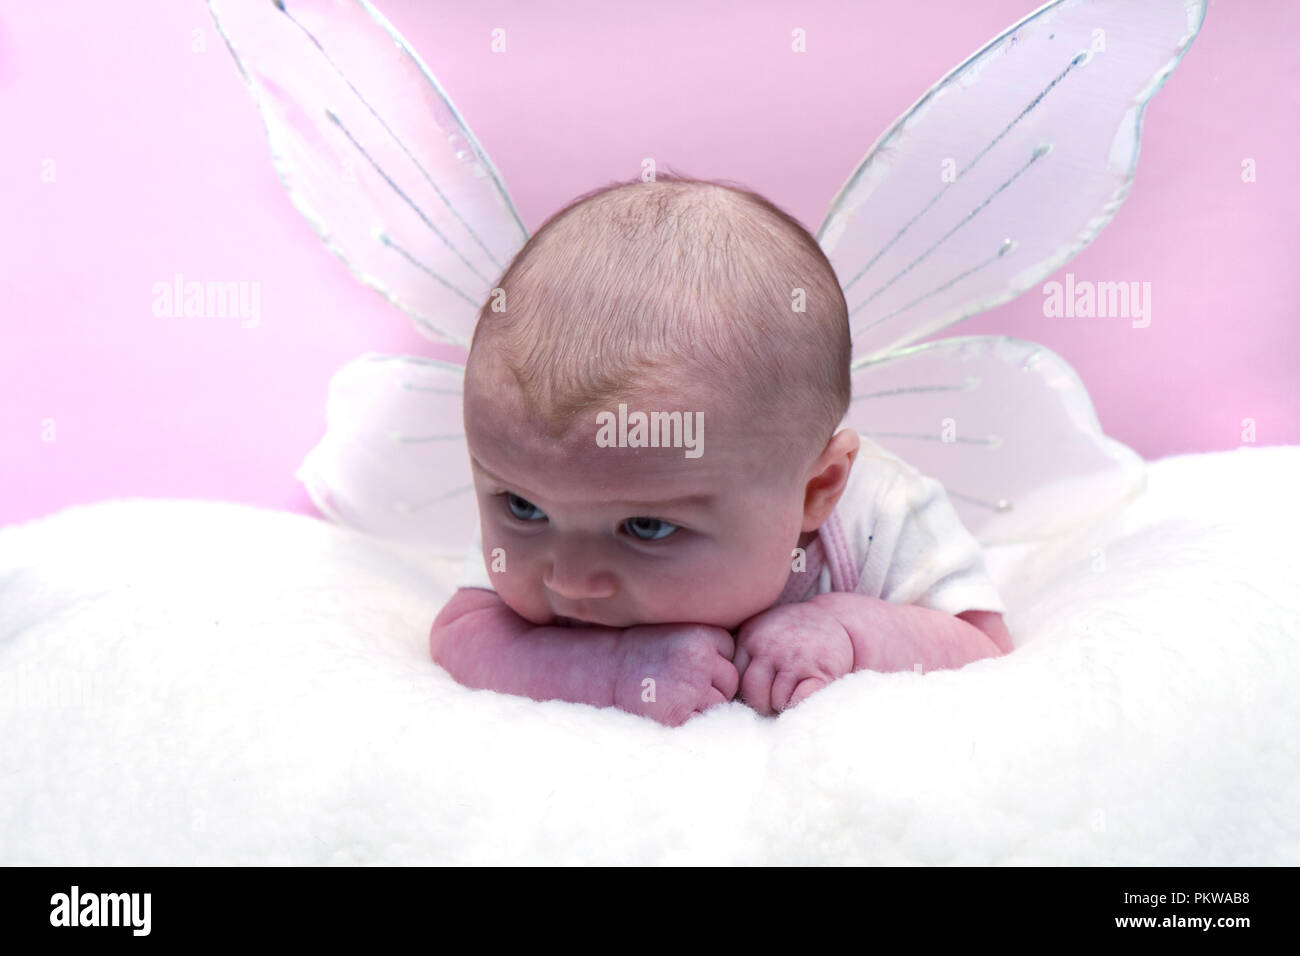 Baby Girl assortiment d'images y compris wearing santa hat, dormir, se laver à remous, pleurant, chef de bande de fleurs et d'ailes angéliques. Banque D'Images